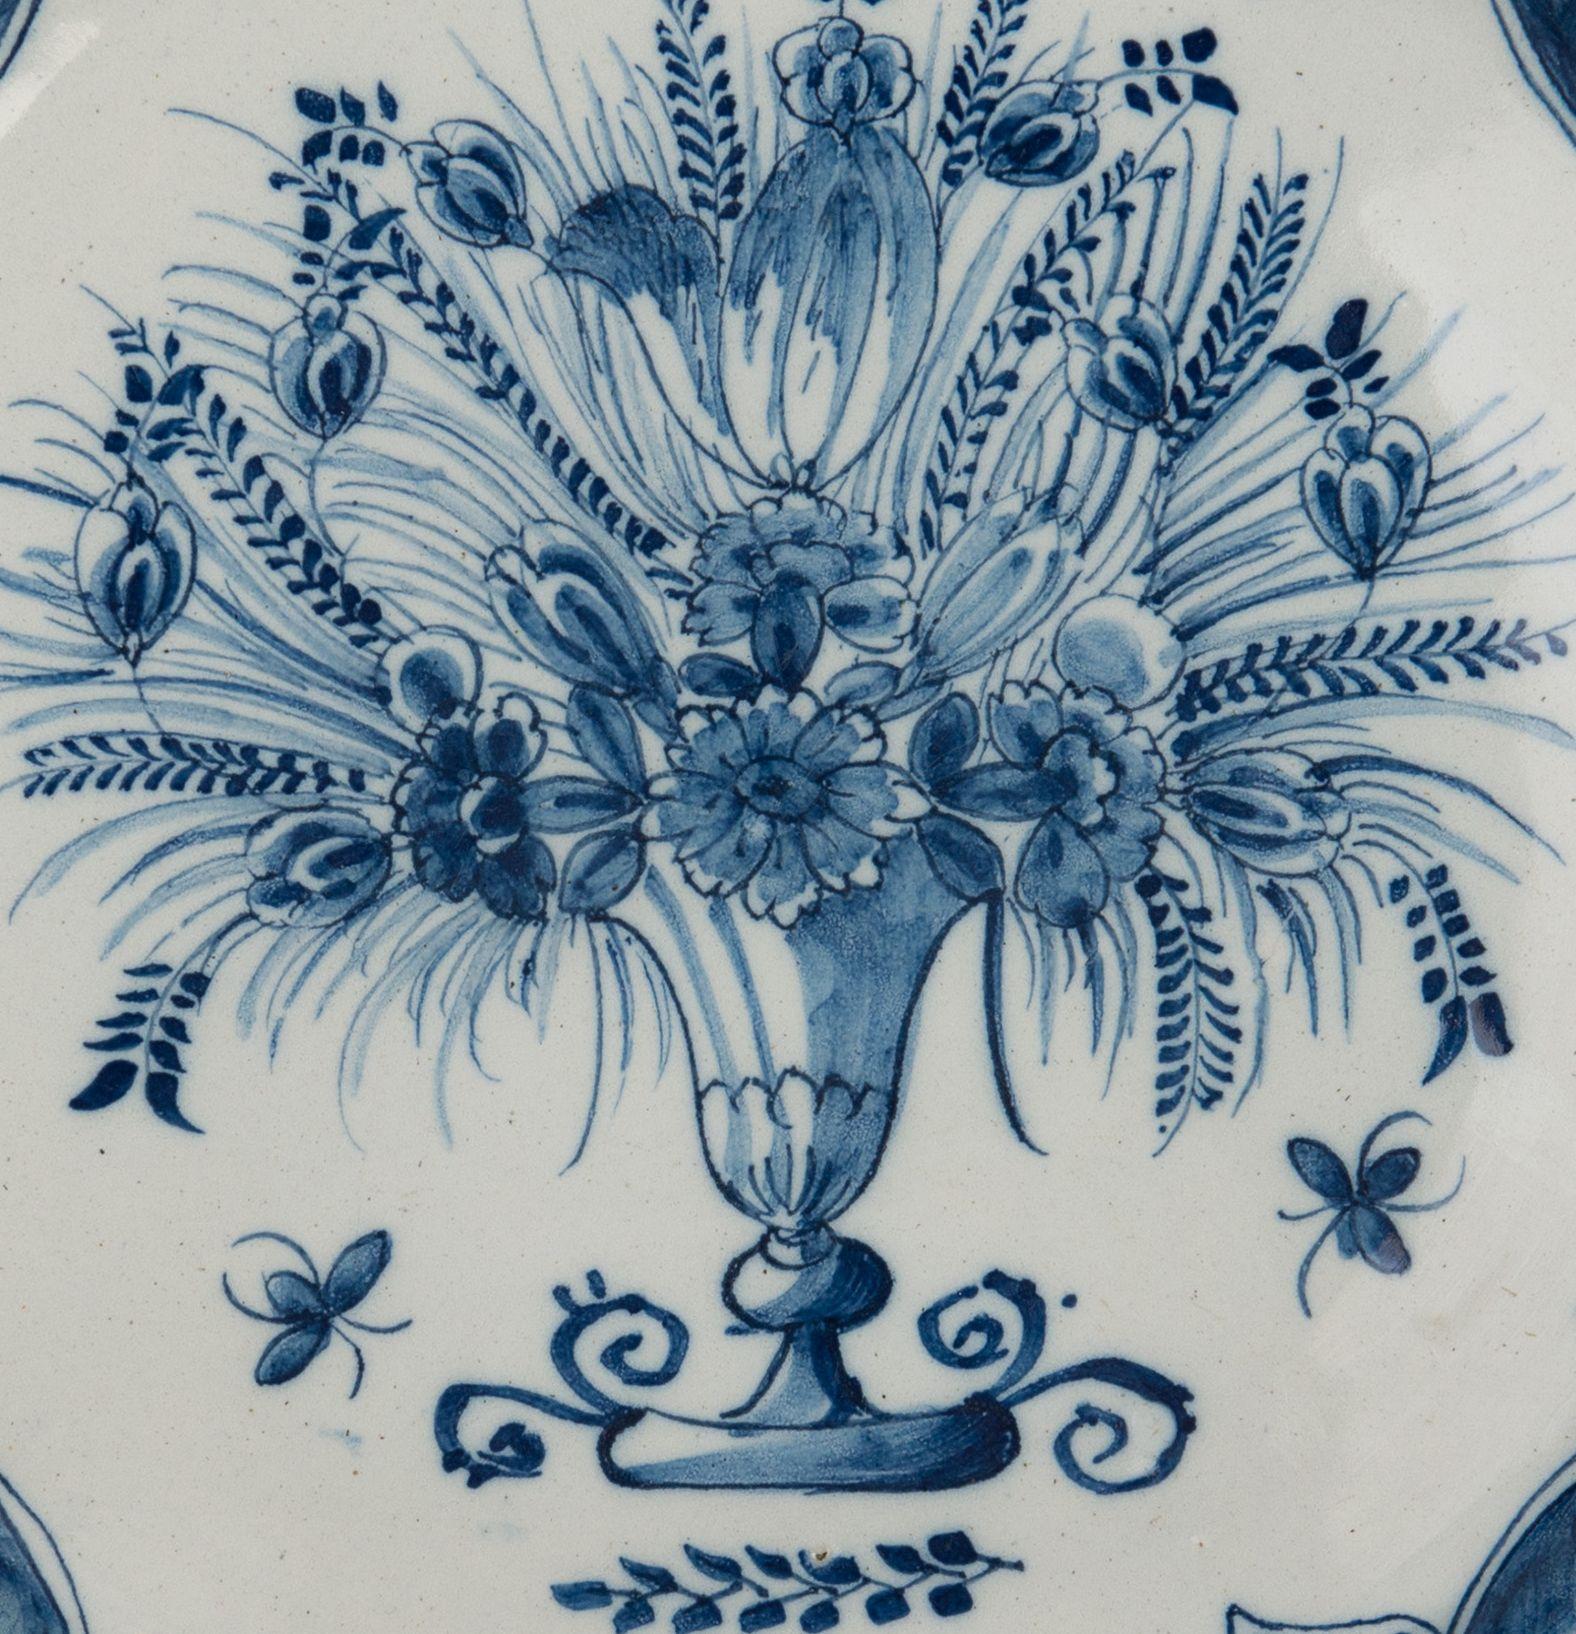 Blaue und weiße Schale mit Blumenvase. Delft, 1740-1760
Die Töpferei Three Bells. Zeichen: drei Glocken

Schale mit blau bemaltem Rand, der eine Vase mit mehreren Blumen und Zweigen zeigt. Unter der Vase ist ein kleiner Zweig abgebildet. Der Rand